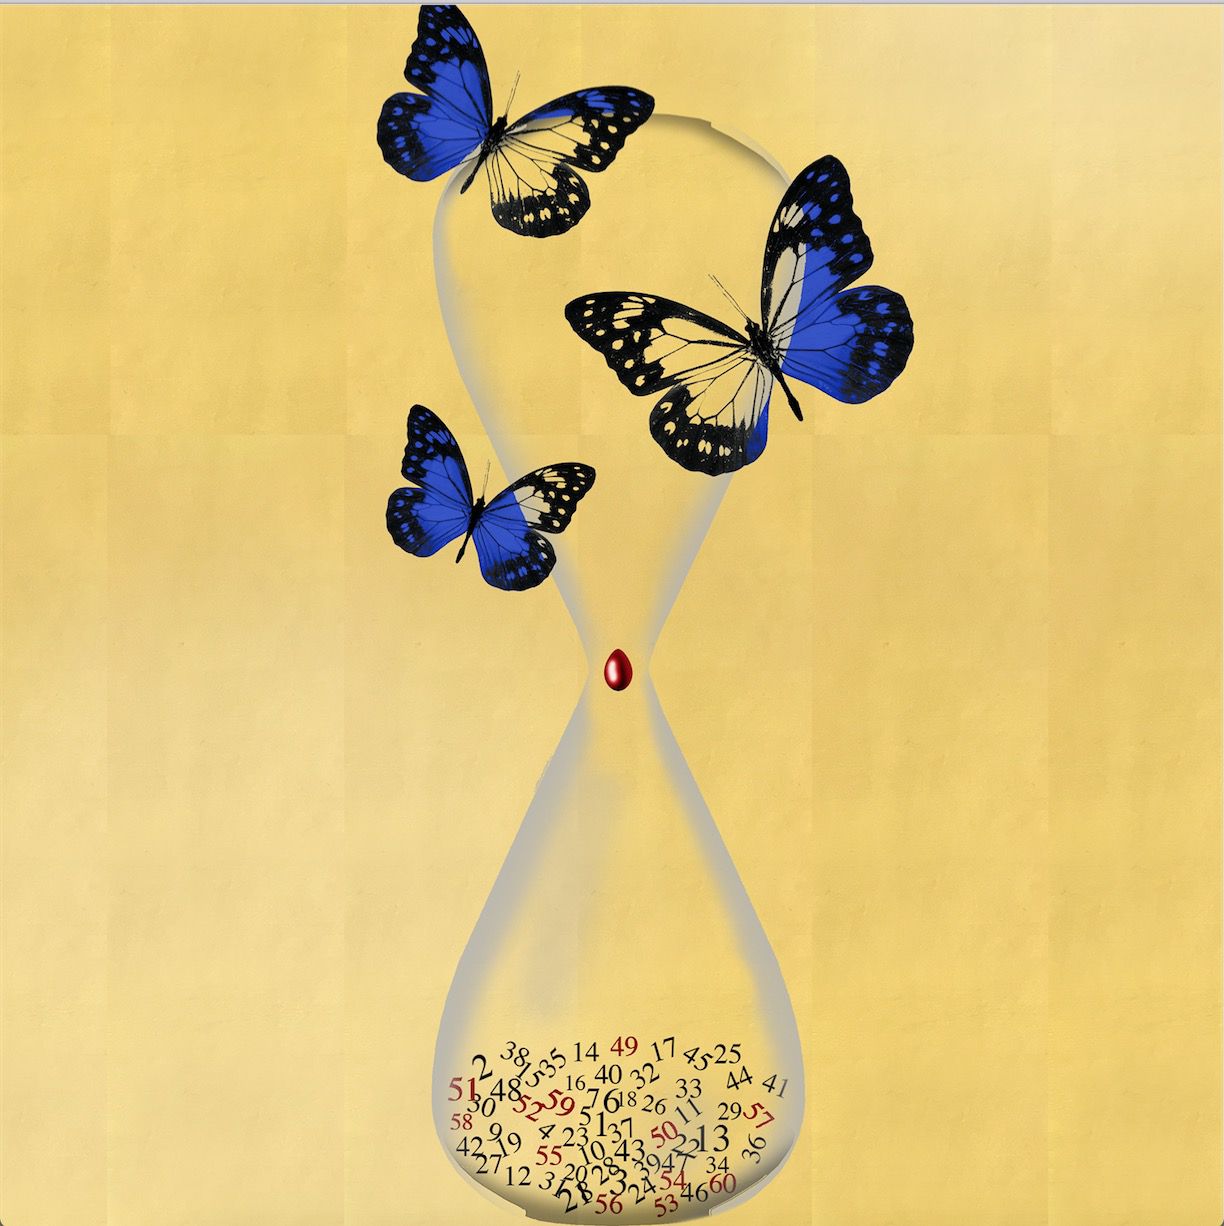 Marco Veronese: Rövidnek definiáljuk egy pillangó életét, anélkül, hogy tudatosítanánk az ő koncepcióját az örökkévalóságról